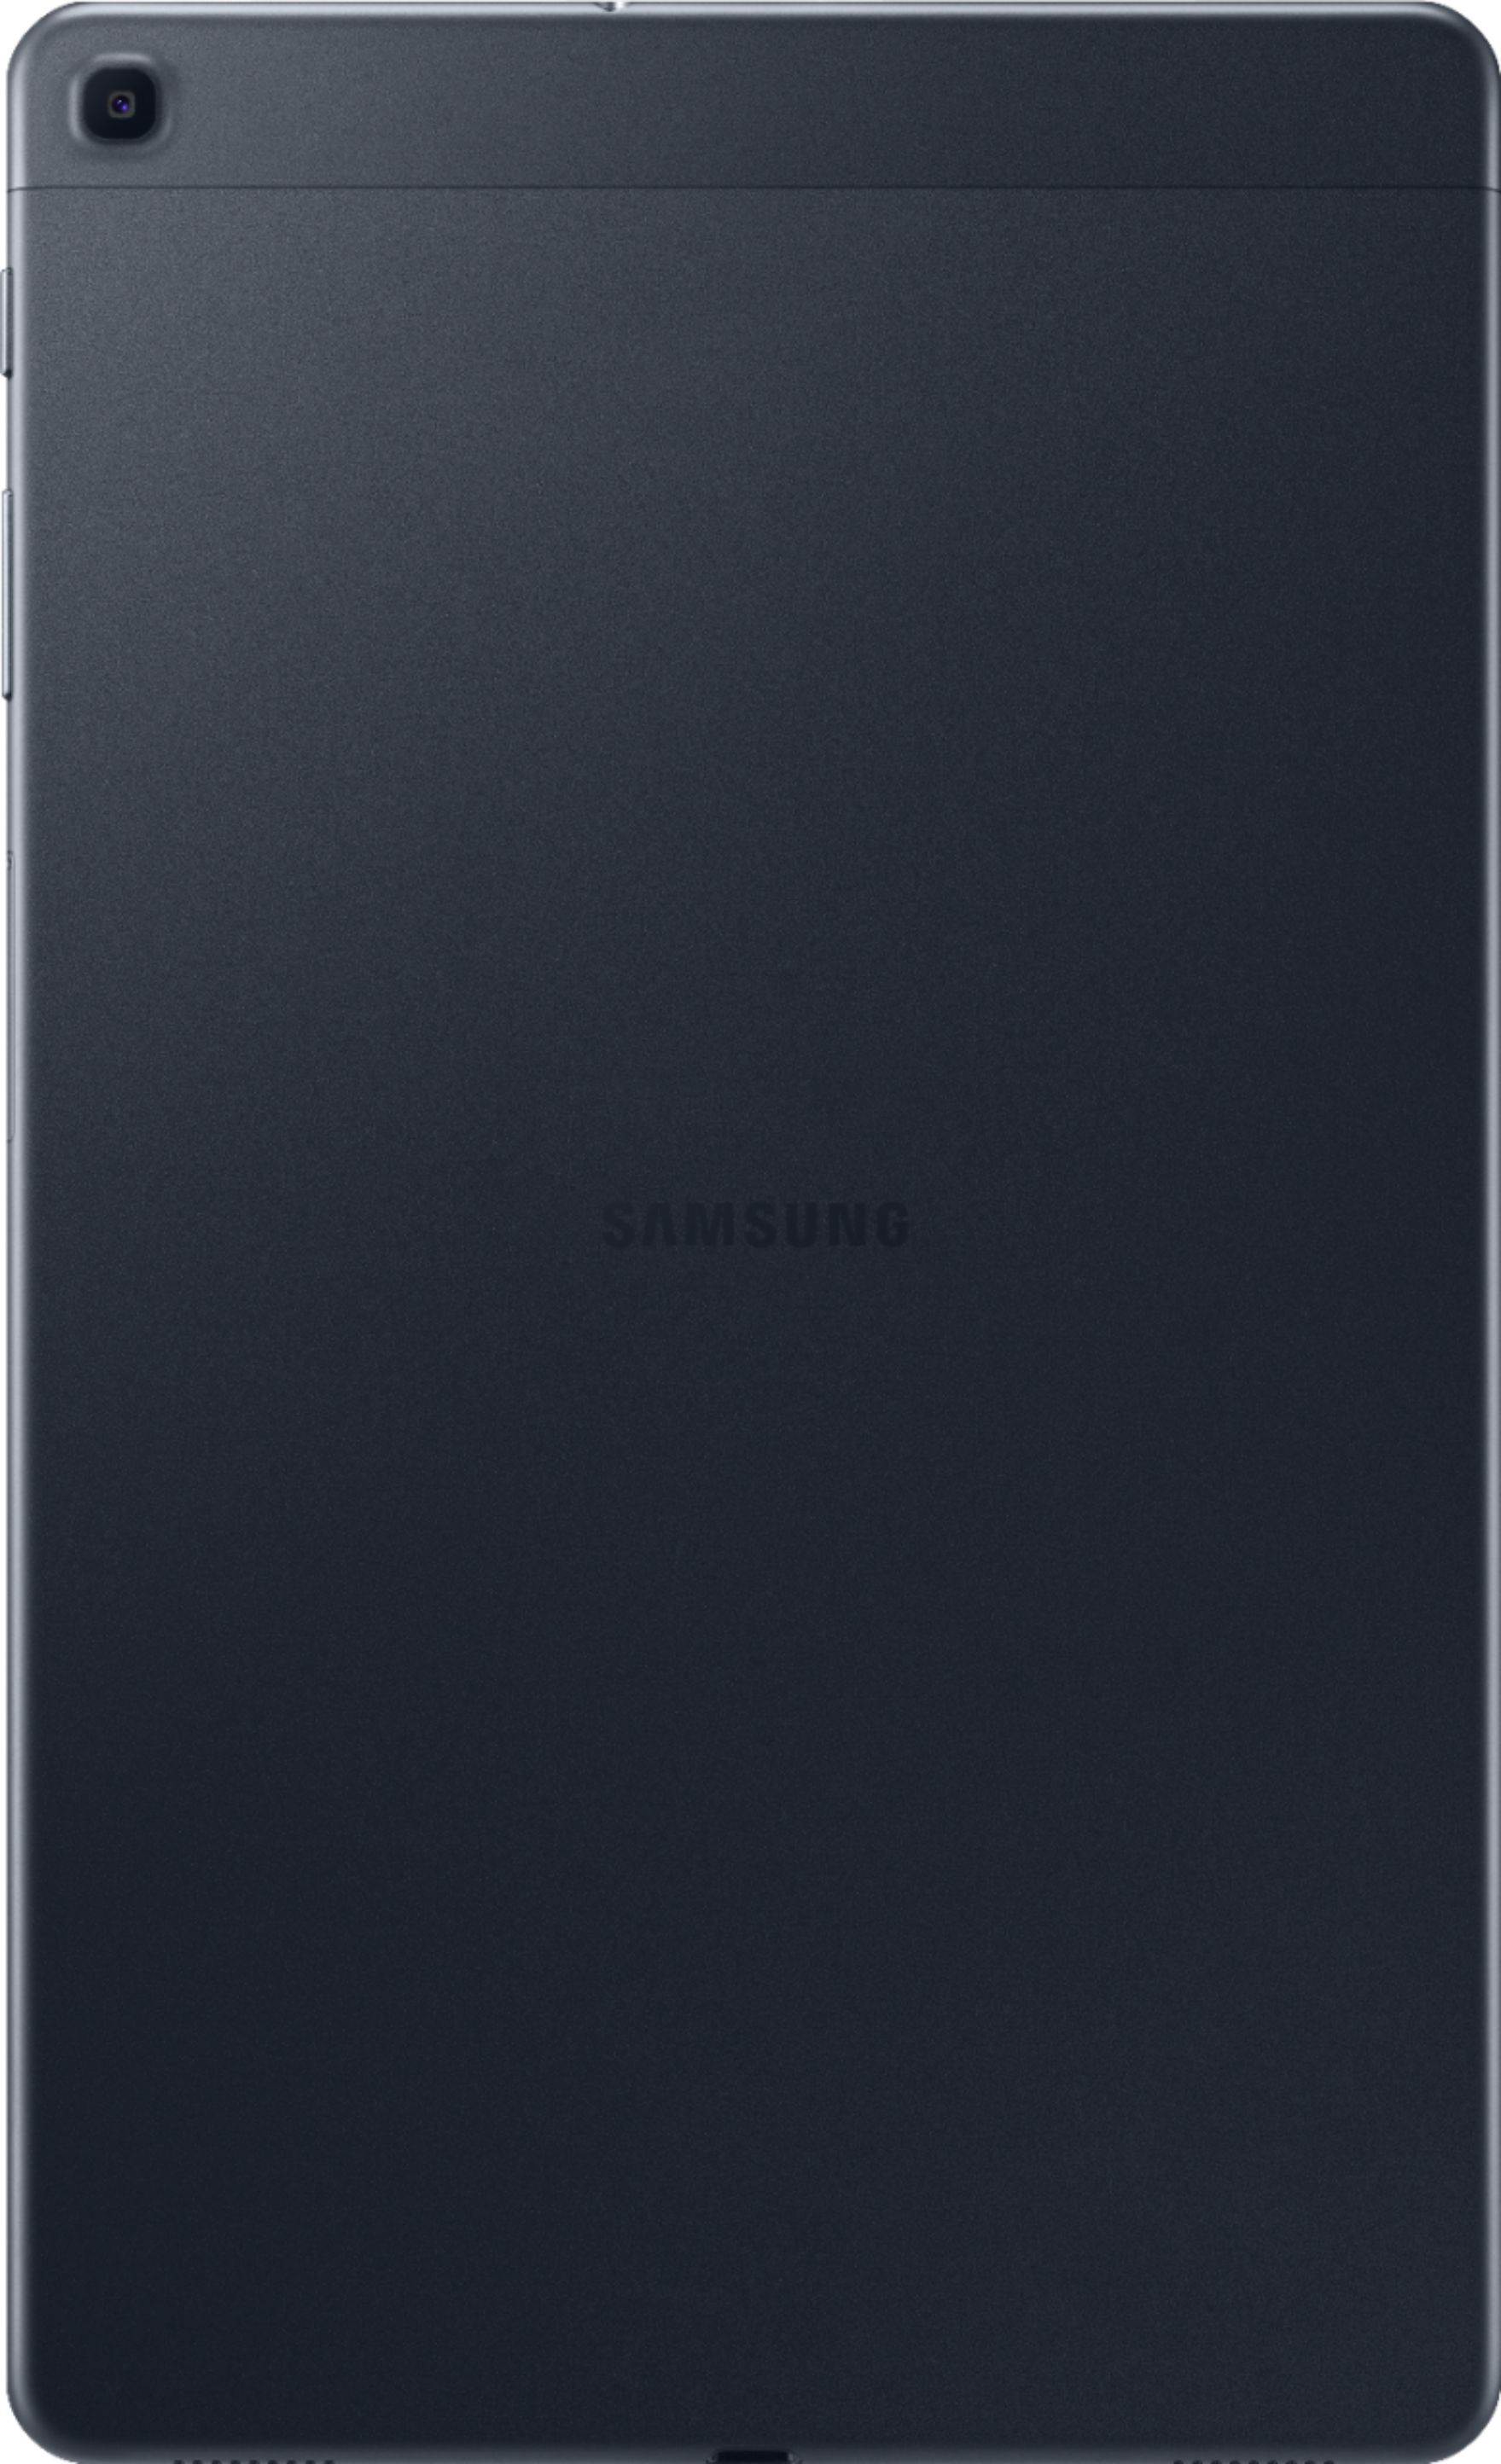 Samsung Galaxy Tab A (2019) 10.1" 128GB Black SM-T510NZKGXAR - Best Buy